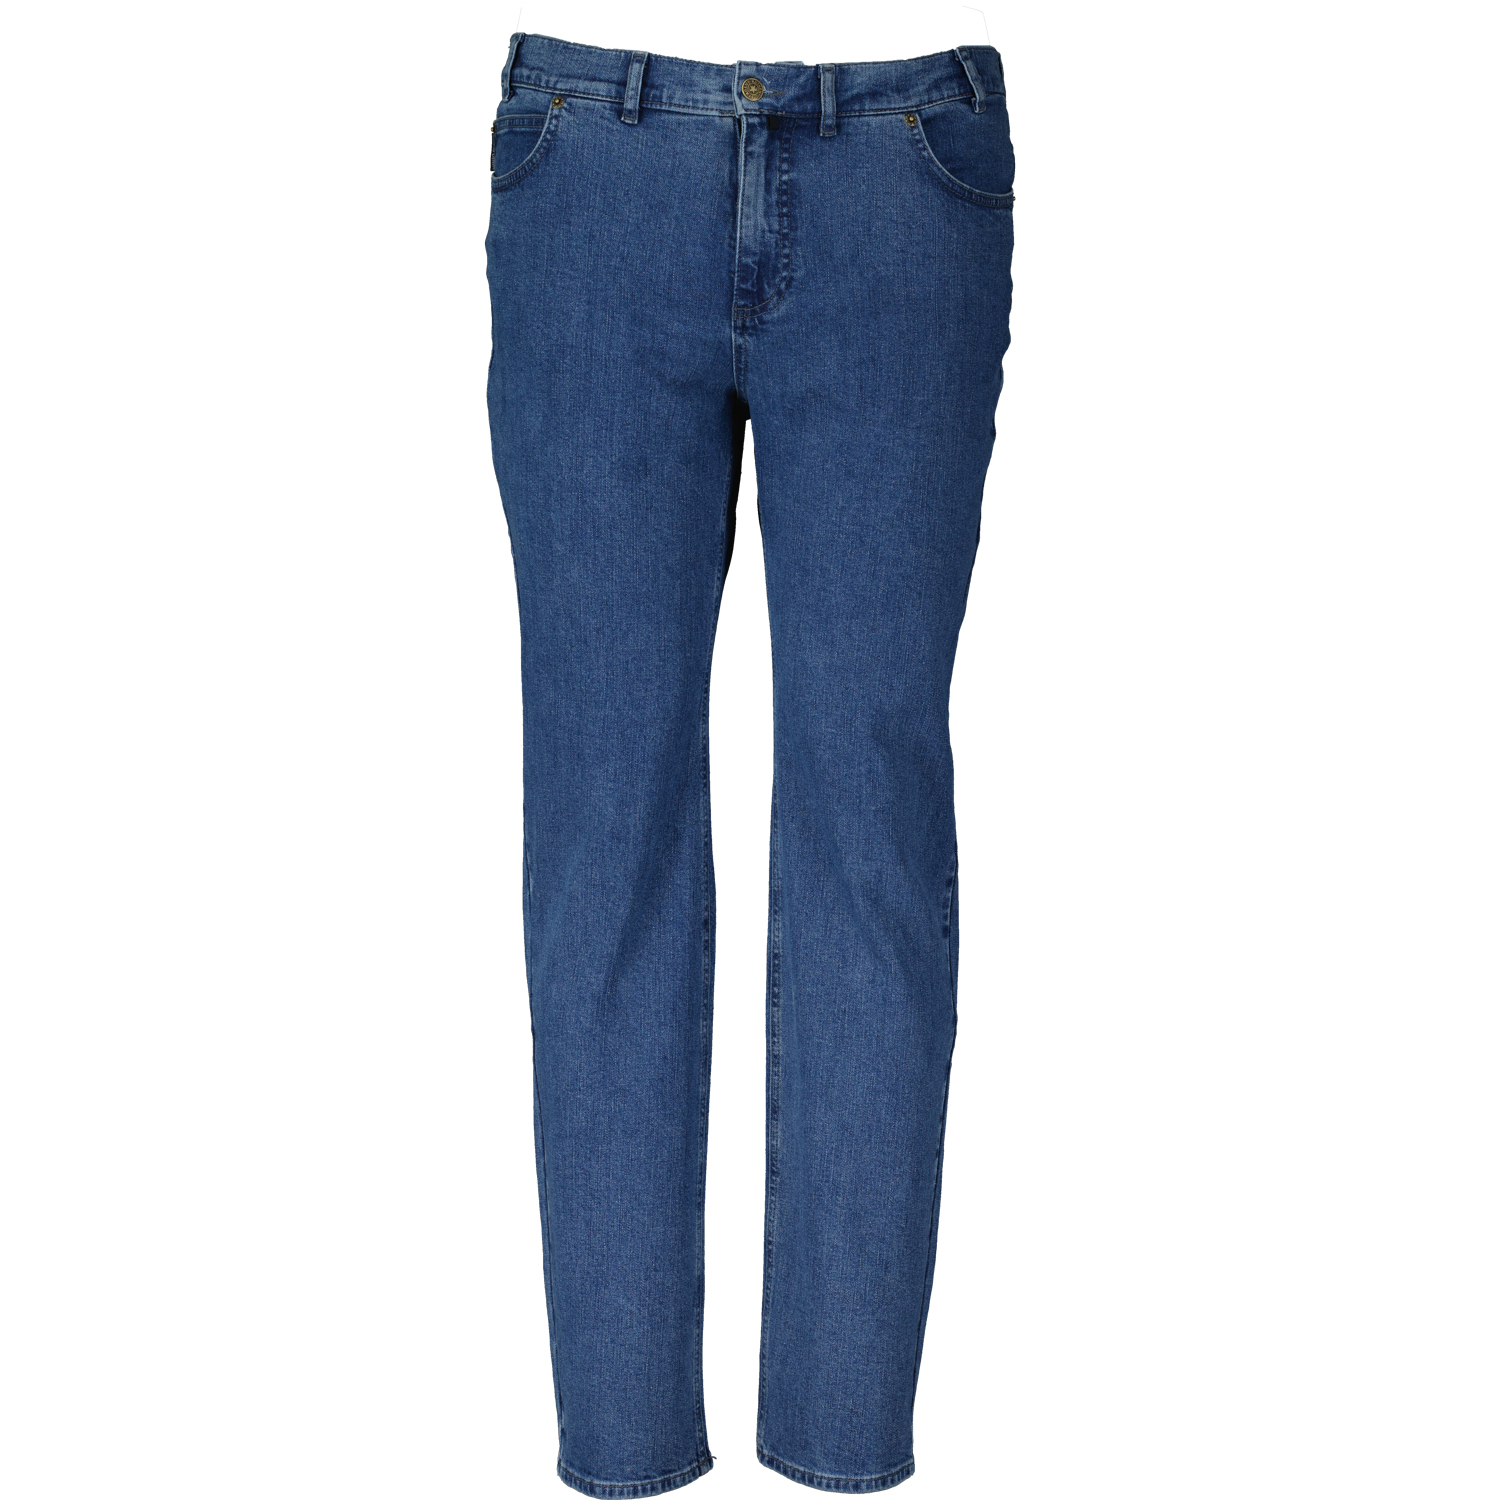 5-Pocket Jeans homme avec stretch série "COLORADO" bleu moyen by Adamo grandes tailles (Taille basse): 28 - 40